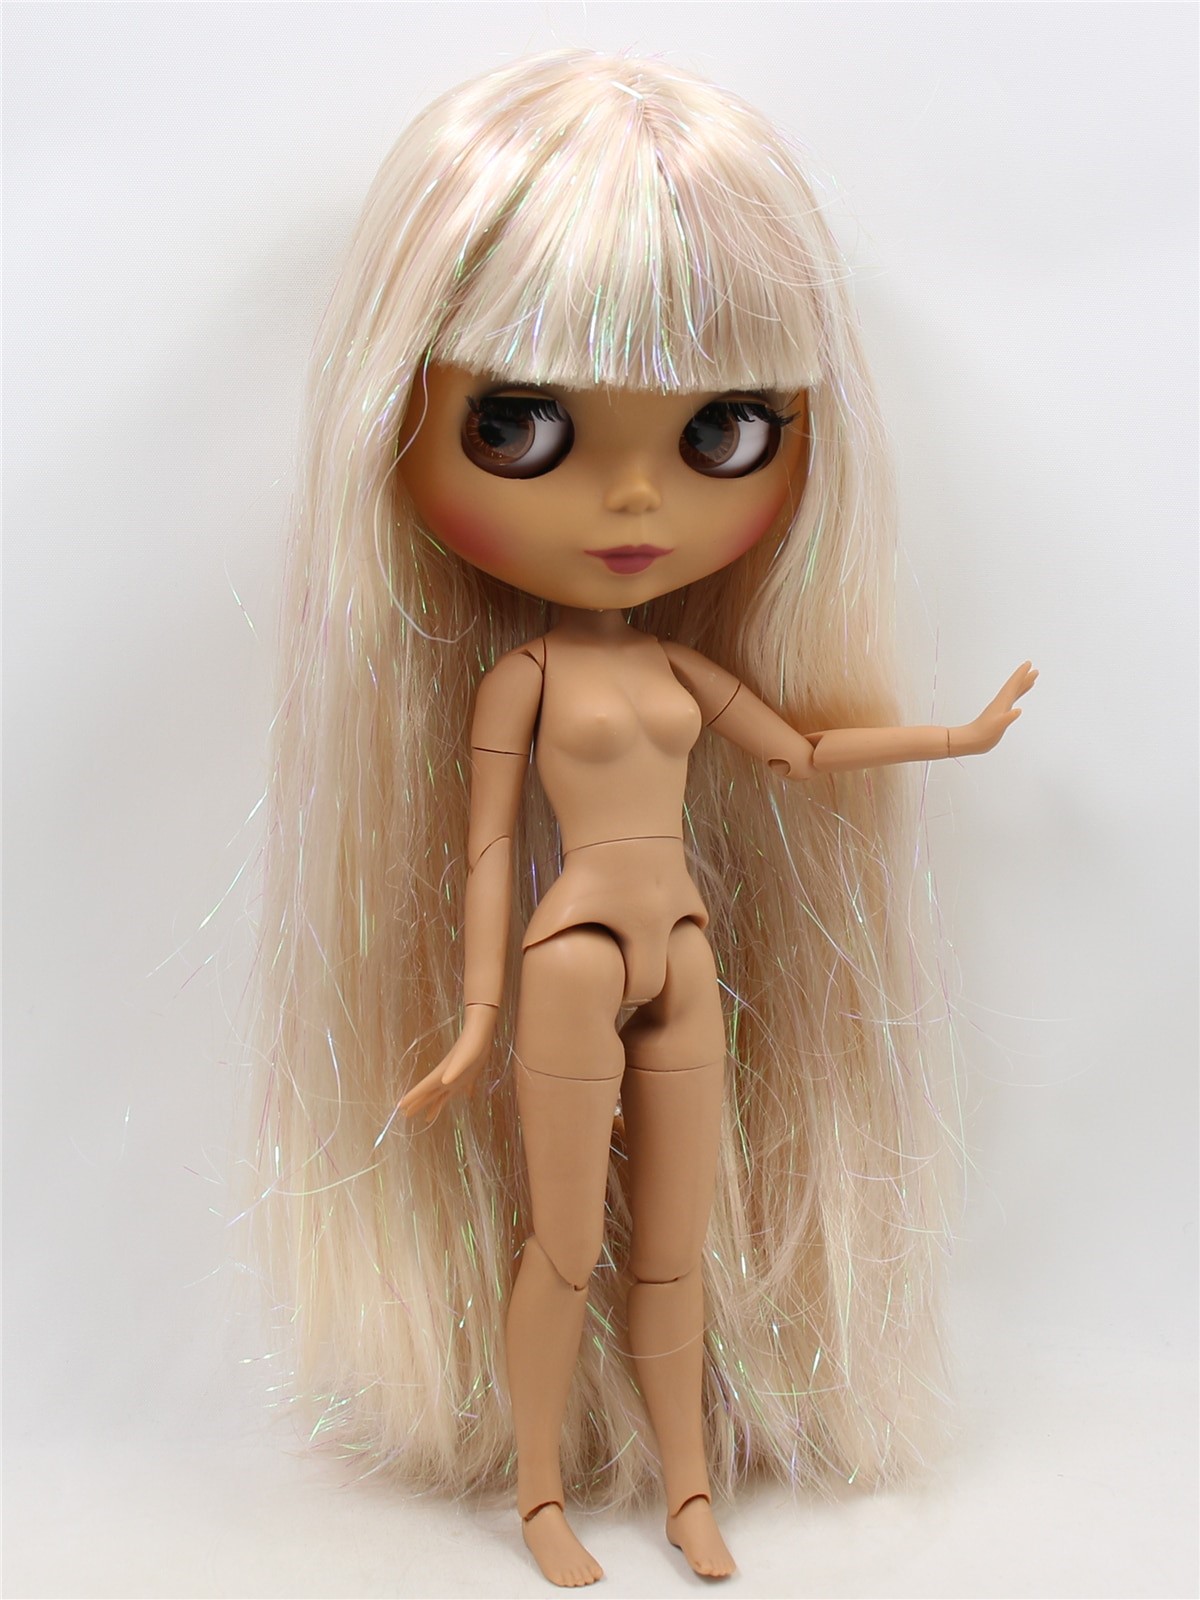 Neo Blythe Boneca com cabelo castanho, pele escura, rosto fosco e corpo articulado Fábrica de cabelo castanho Blythe Fábrica de bonecas de pele escura Blythe Fábrica de rosto fosco de boneca Blythe Boneca